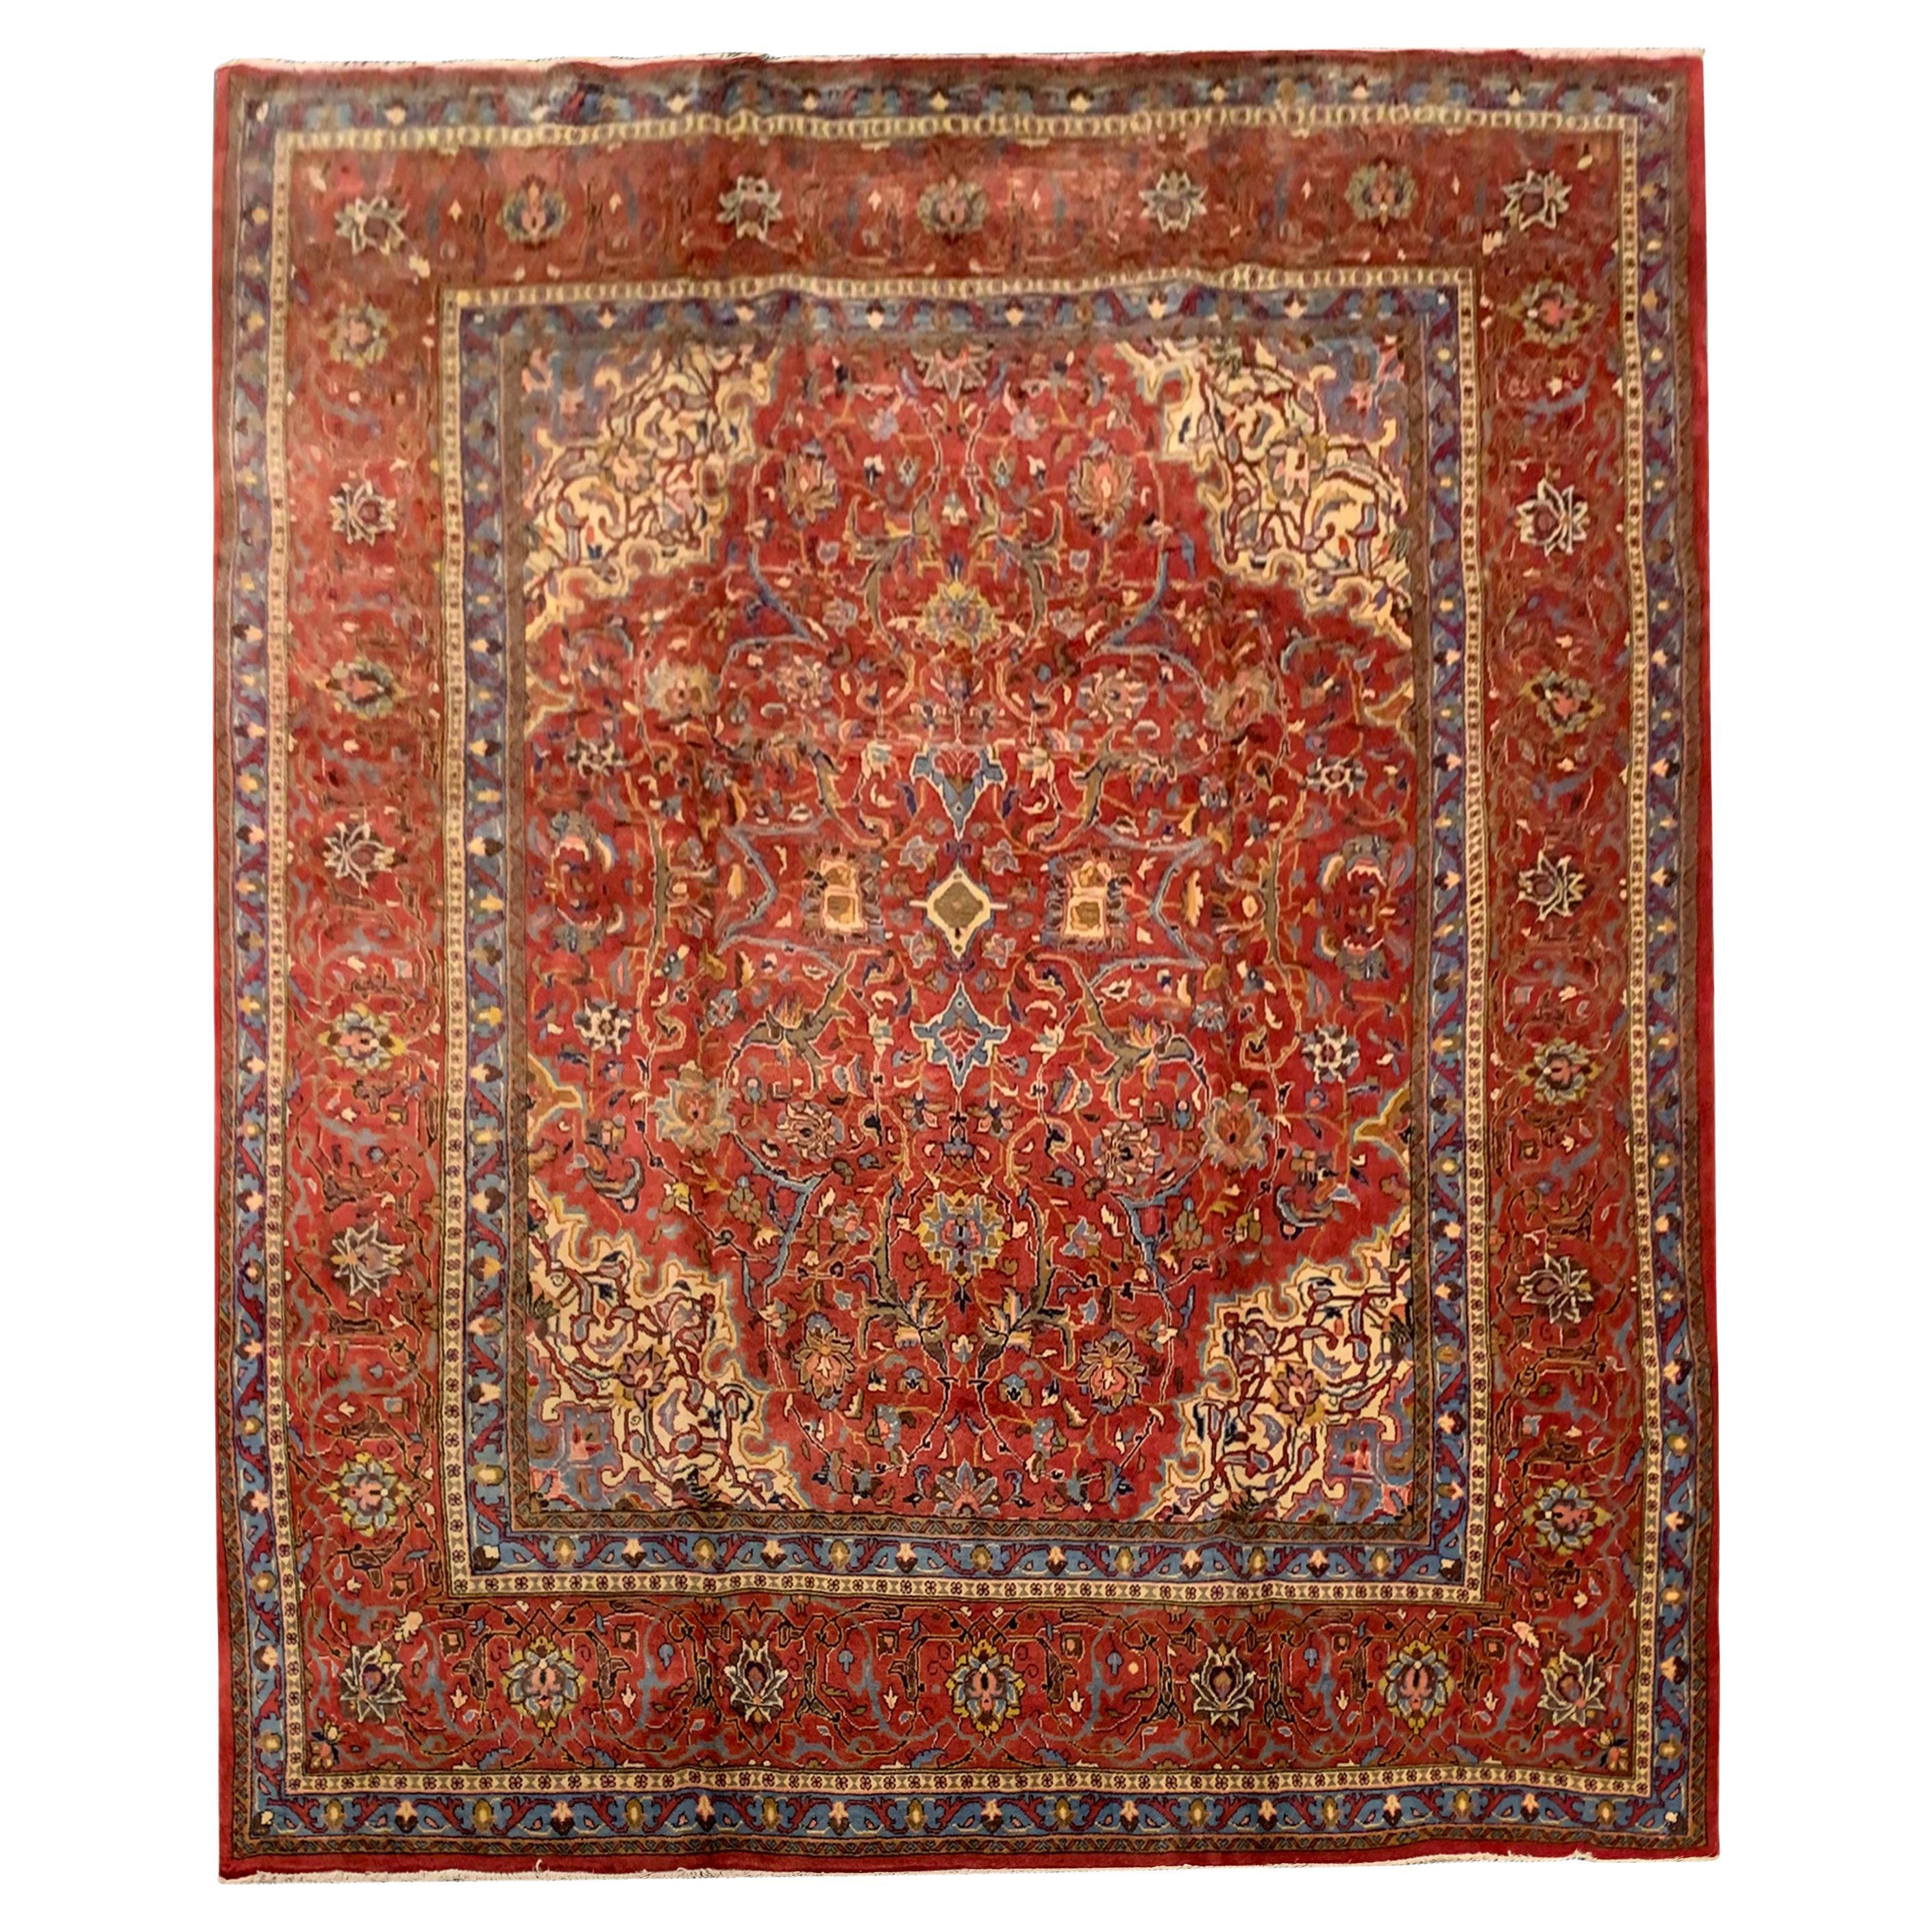 Großer handgewebter traditioneller roter Teppich aus Wolle im Vintage-Stil